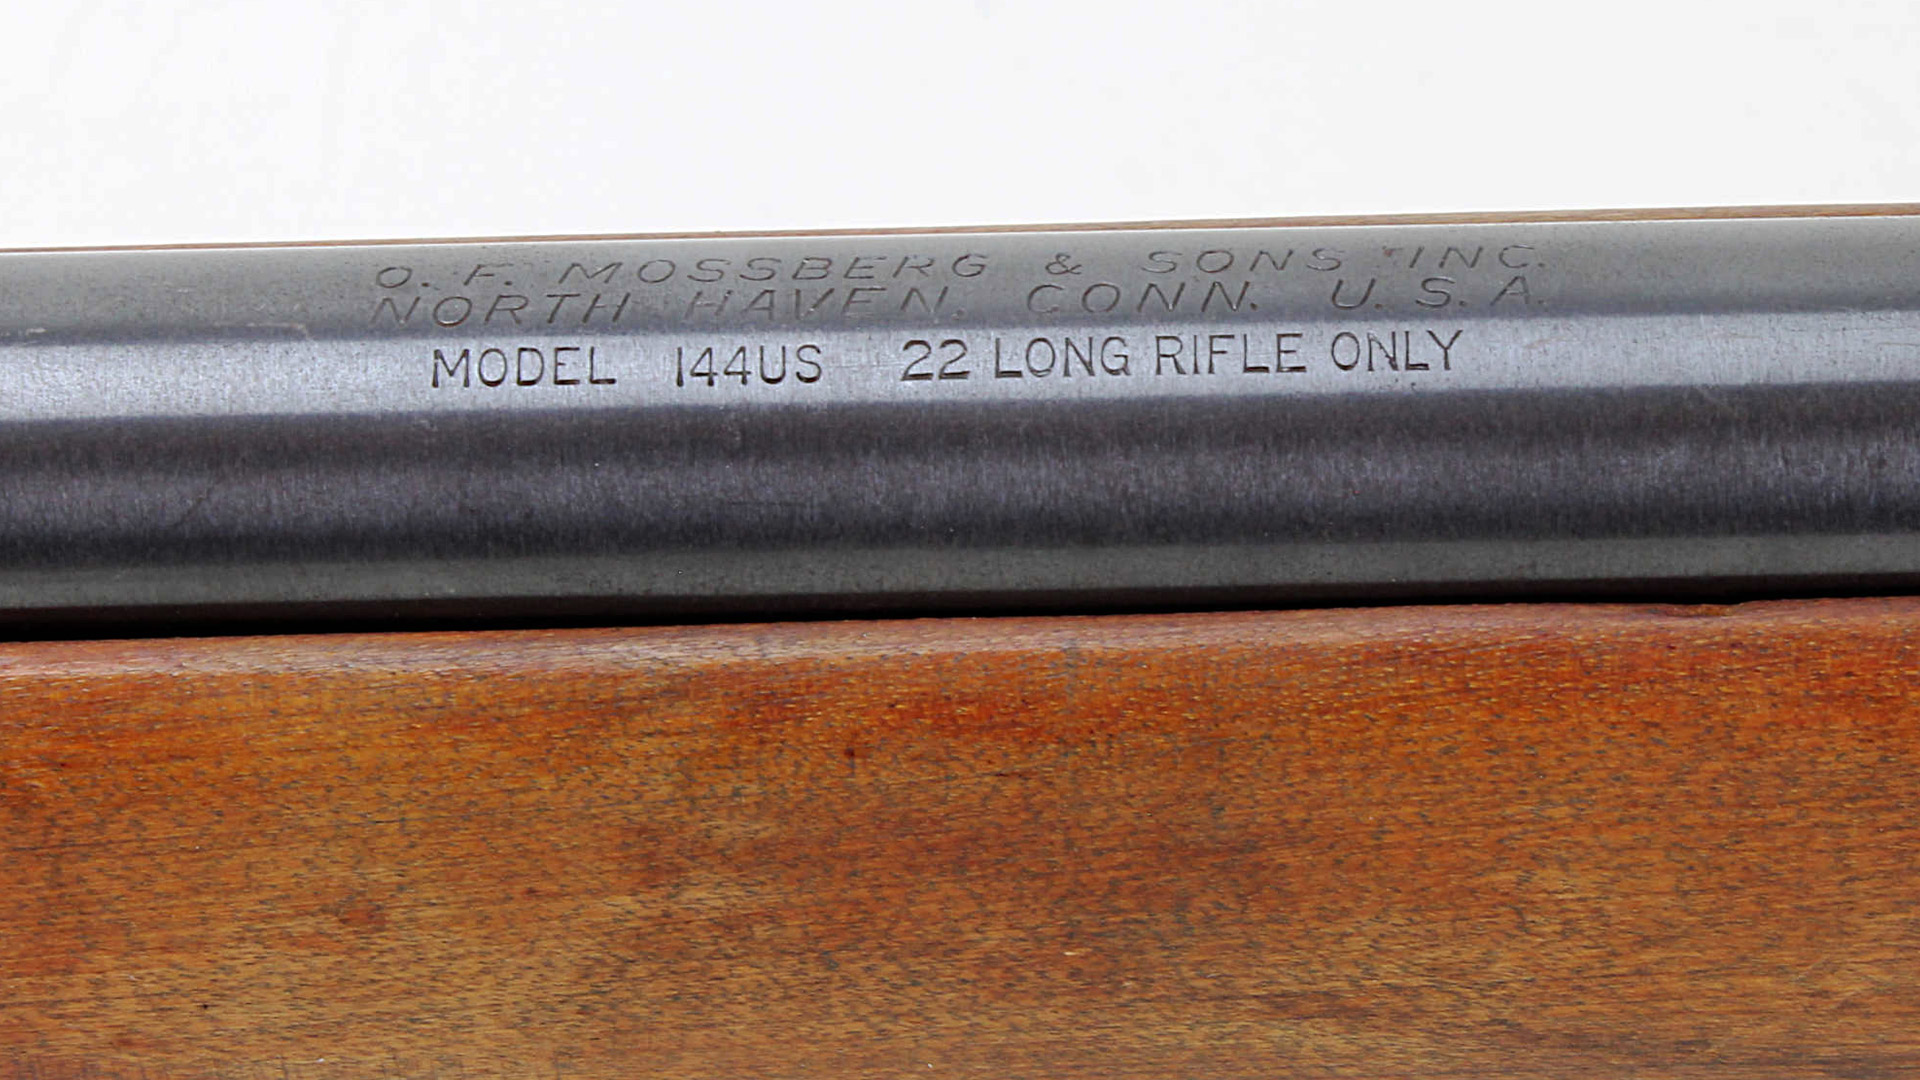 Model 144 barrel markings